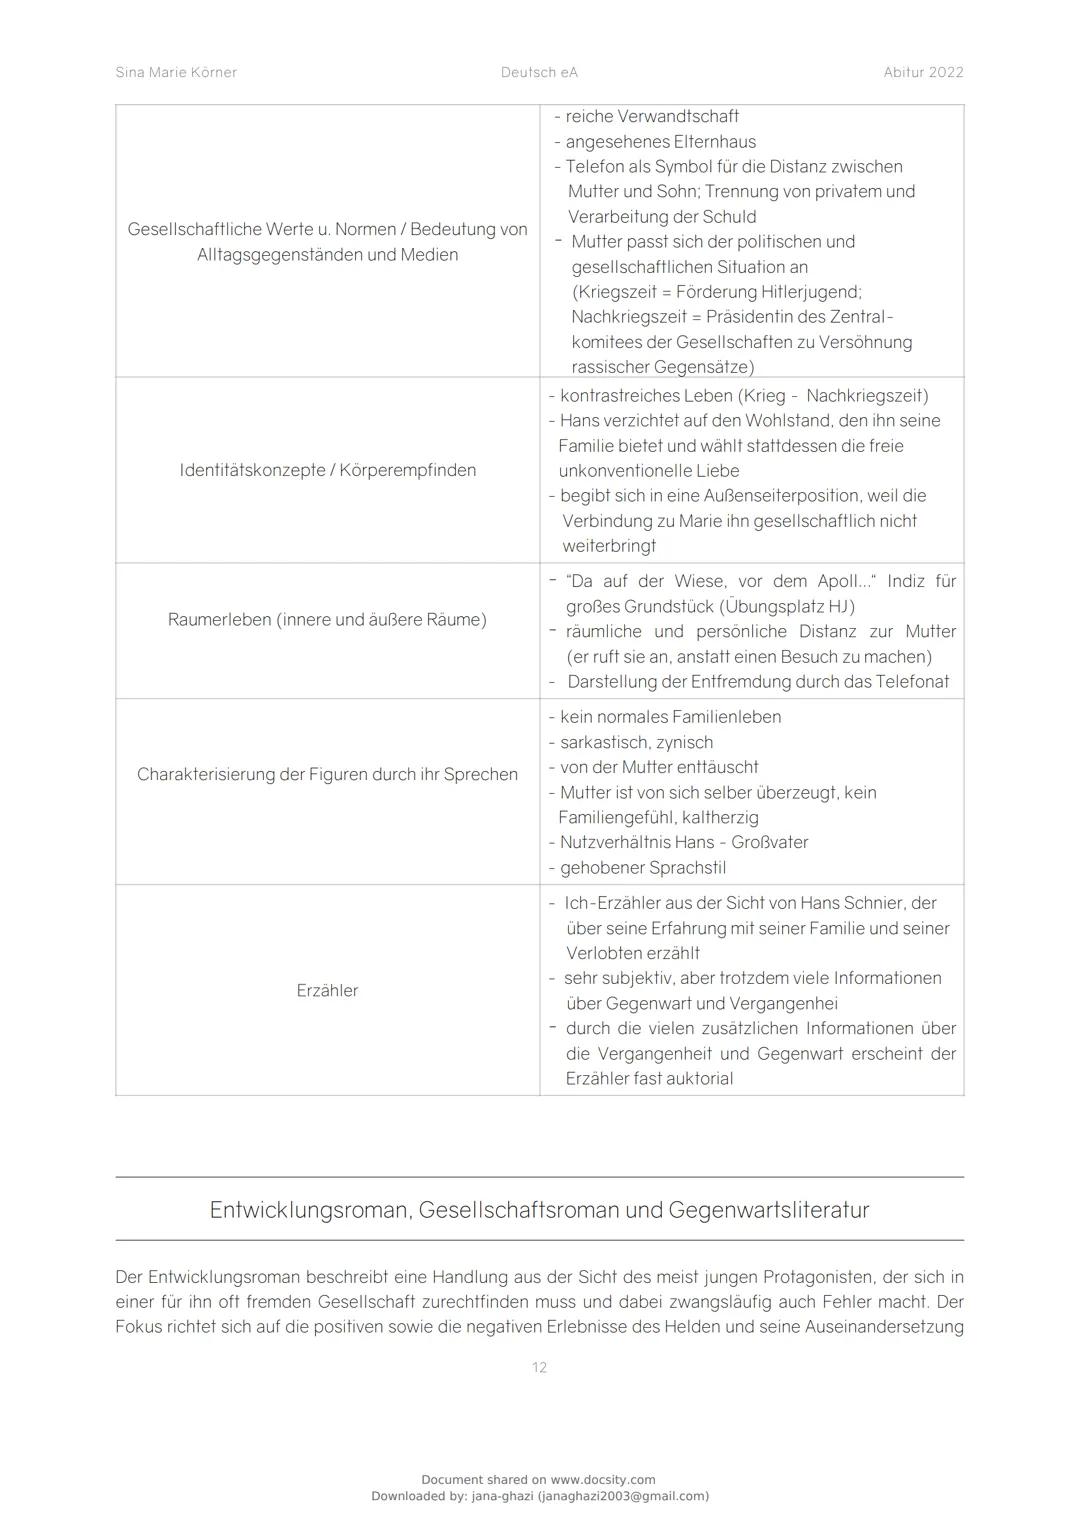 docsity
Deutsch LK - Unter der
Drachenwand
Deutsch
13 pag.
Document shared on www.docsity.com
Downloaded by: jana-ghazi (janaghazi2003@gmail